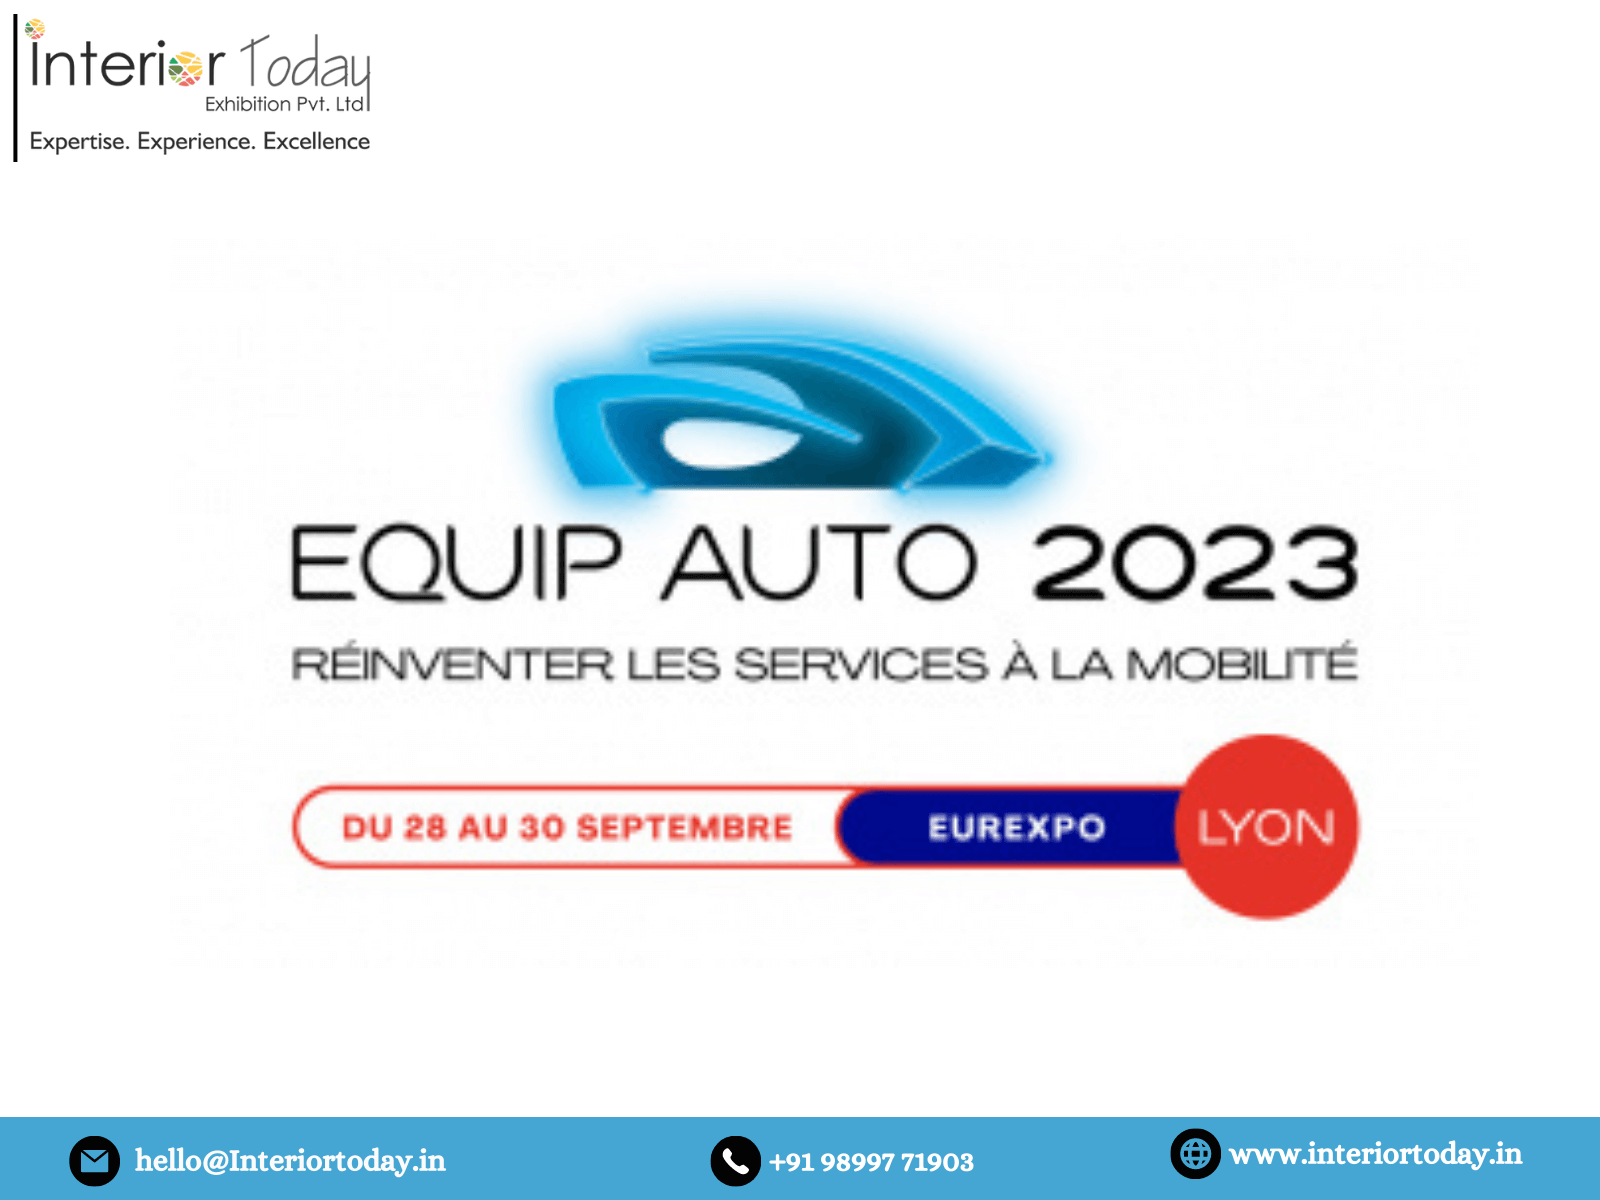 equip-auto-2023-interior-today-exhibition